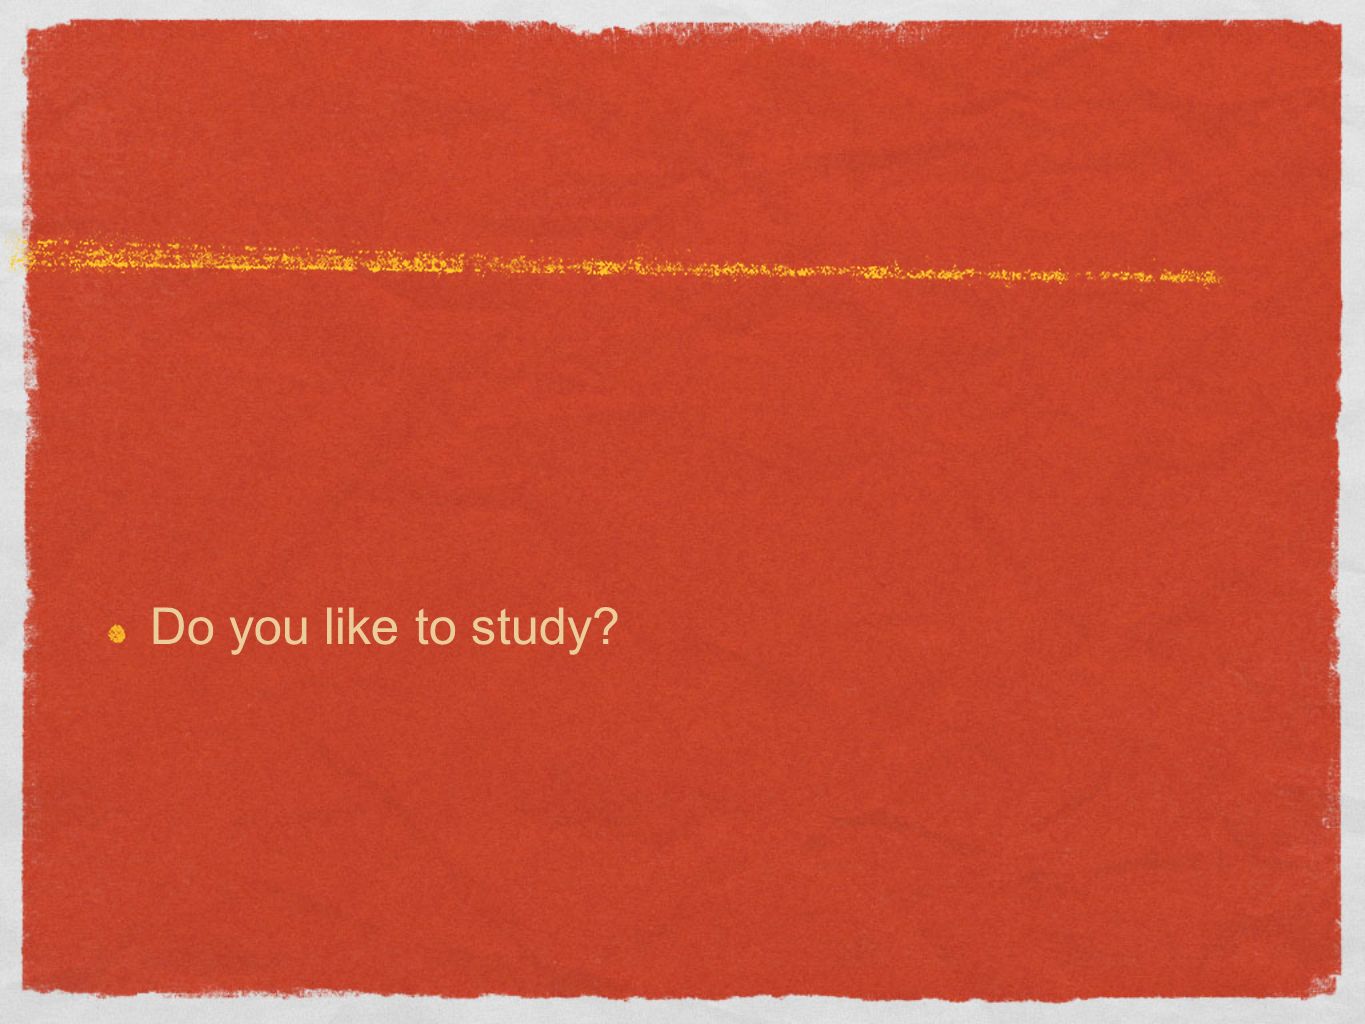 Do you like to study